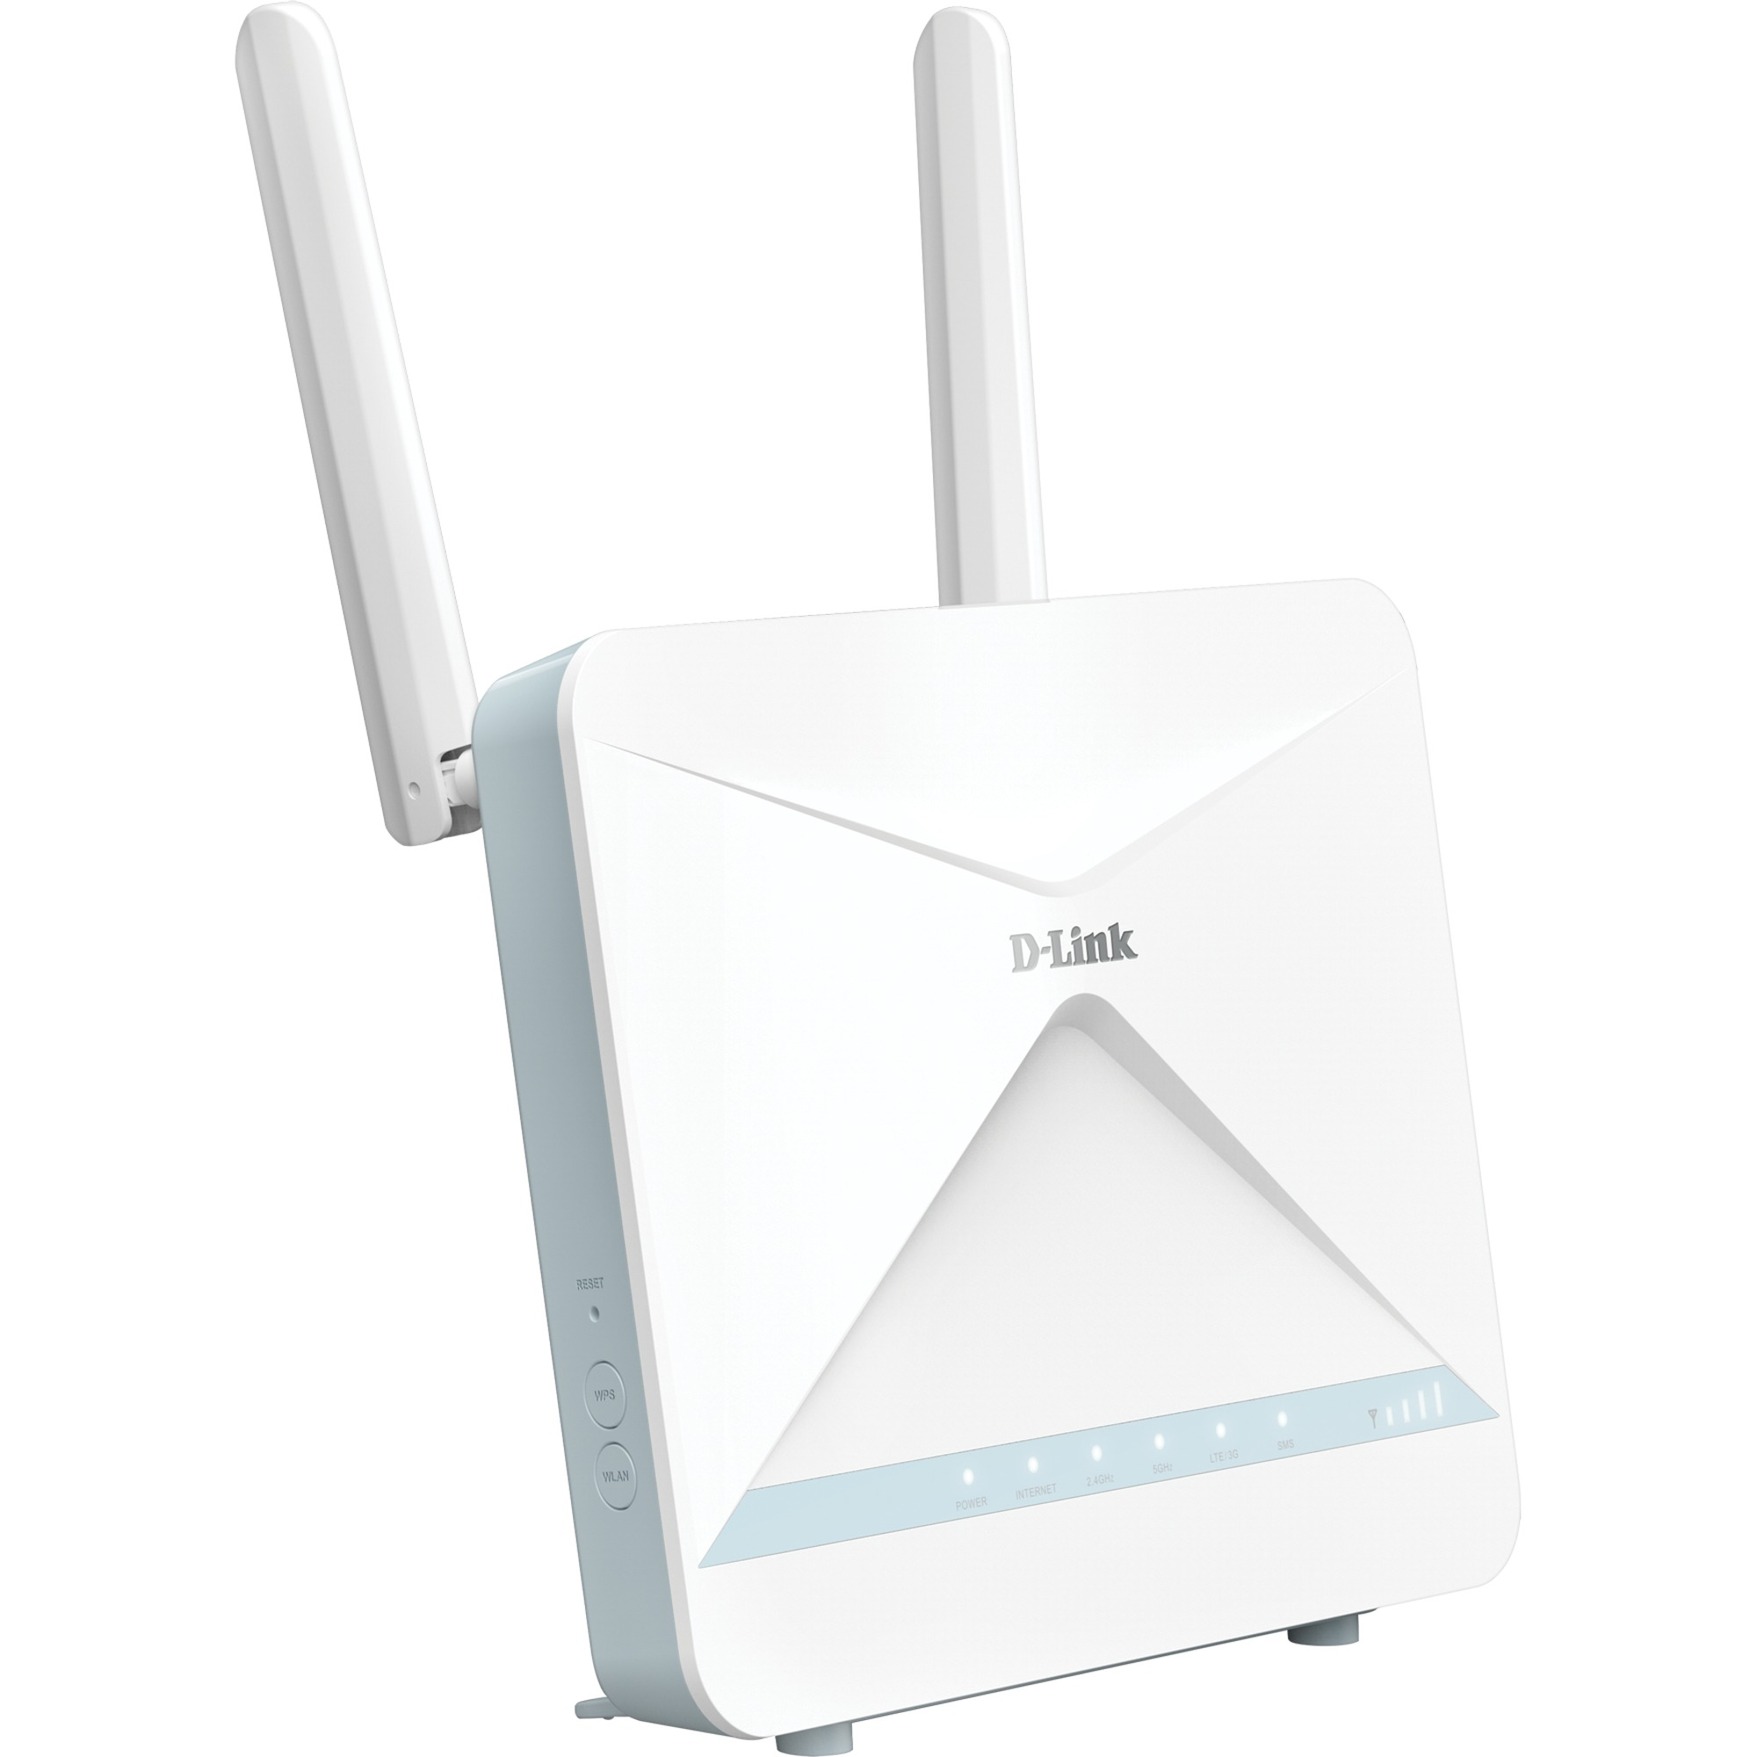 G416/E EAGLE PRO AI AX1500 4G+, Mobile WLAN-Router von D-Link